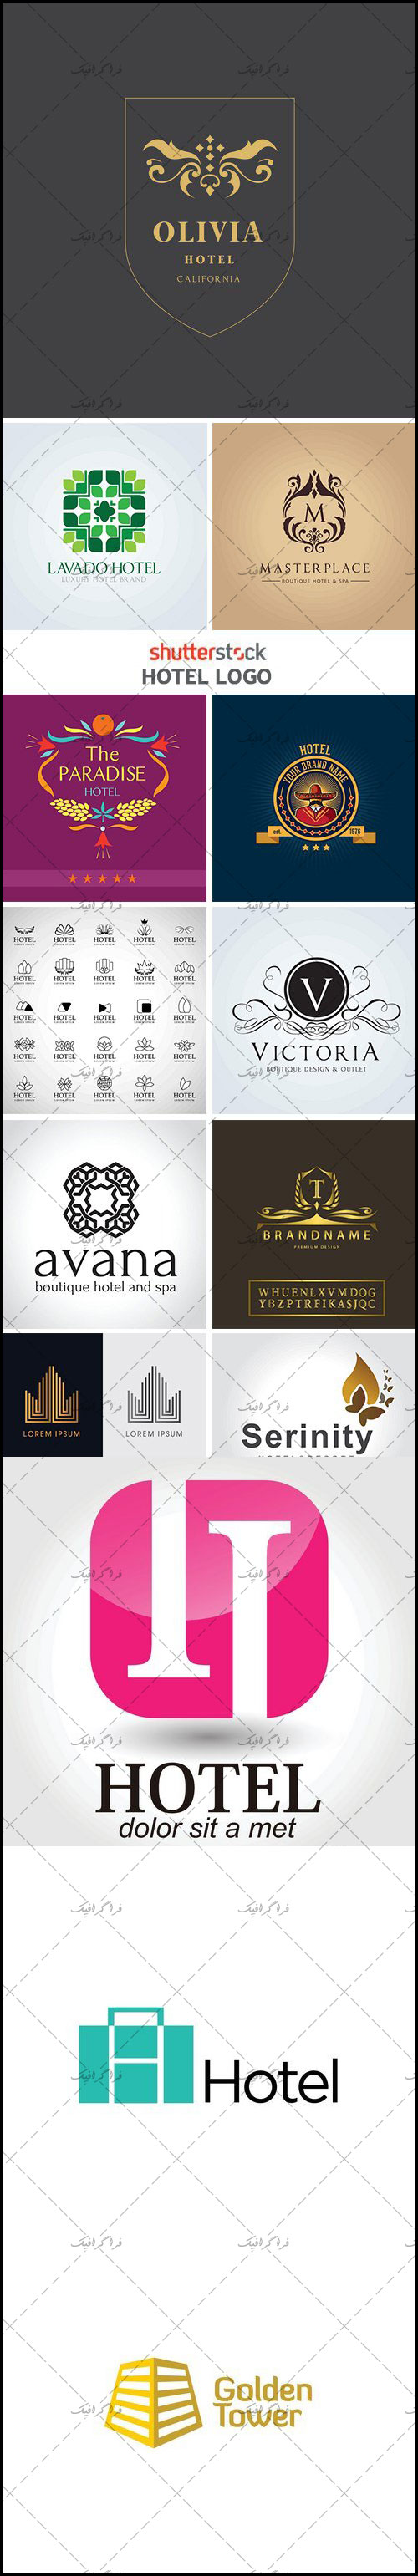 دانلود لوگو های هتل - Hotel Logos